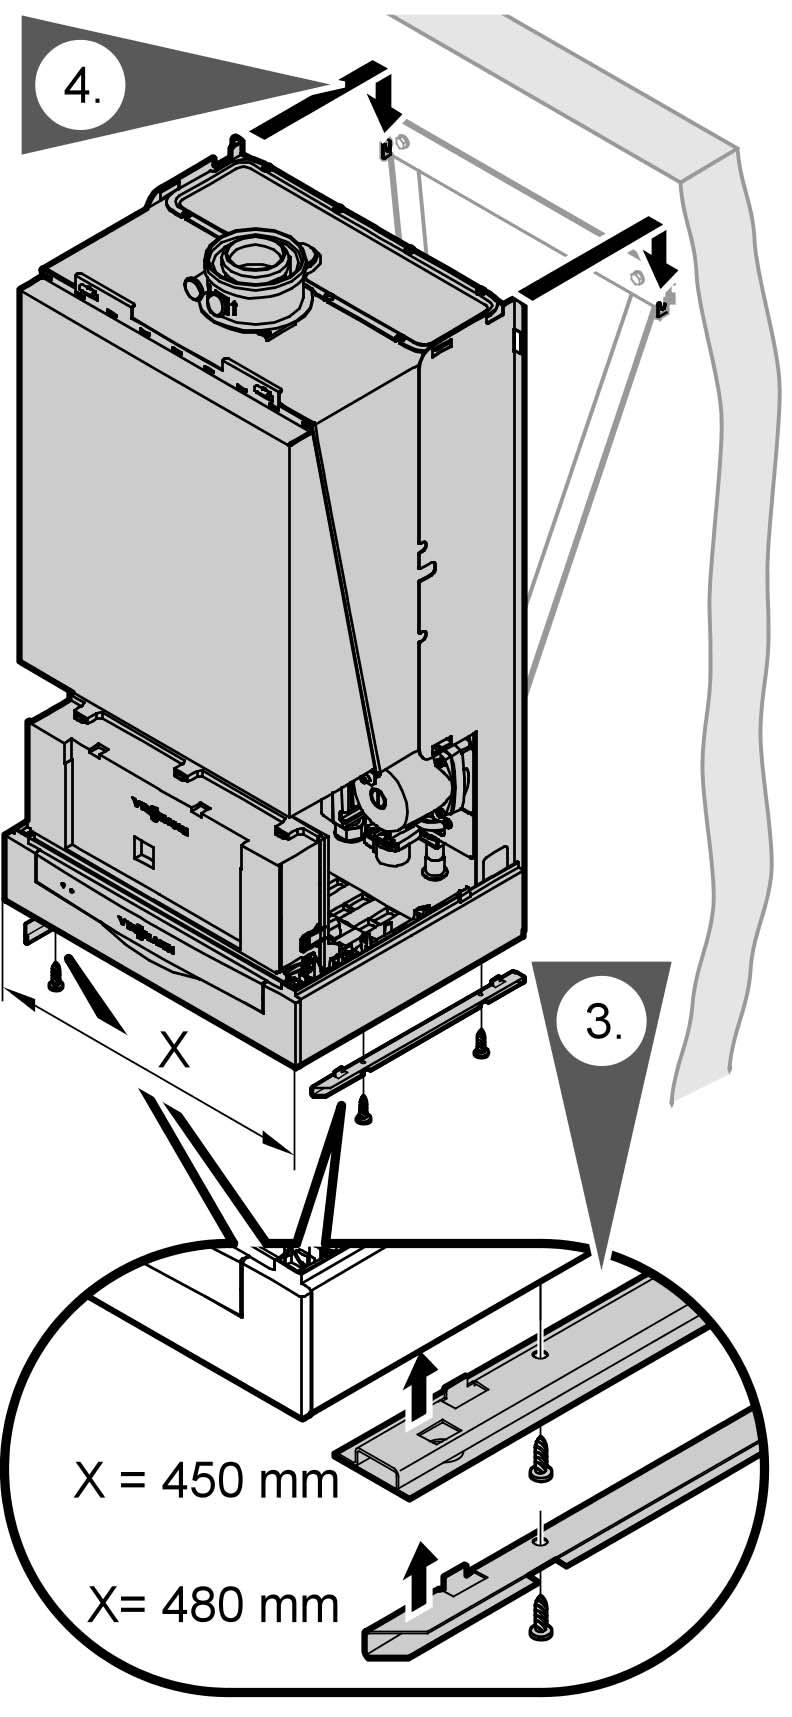 Wskazówki montażowe (ciąg dalszy) 3. Przykręcić szyny mocujące do spodniej ściany kotła grzewczego. 4.